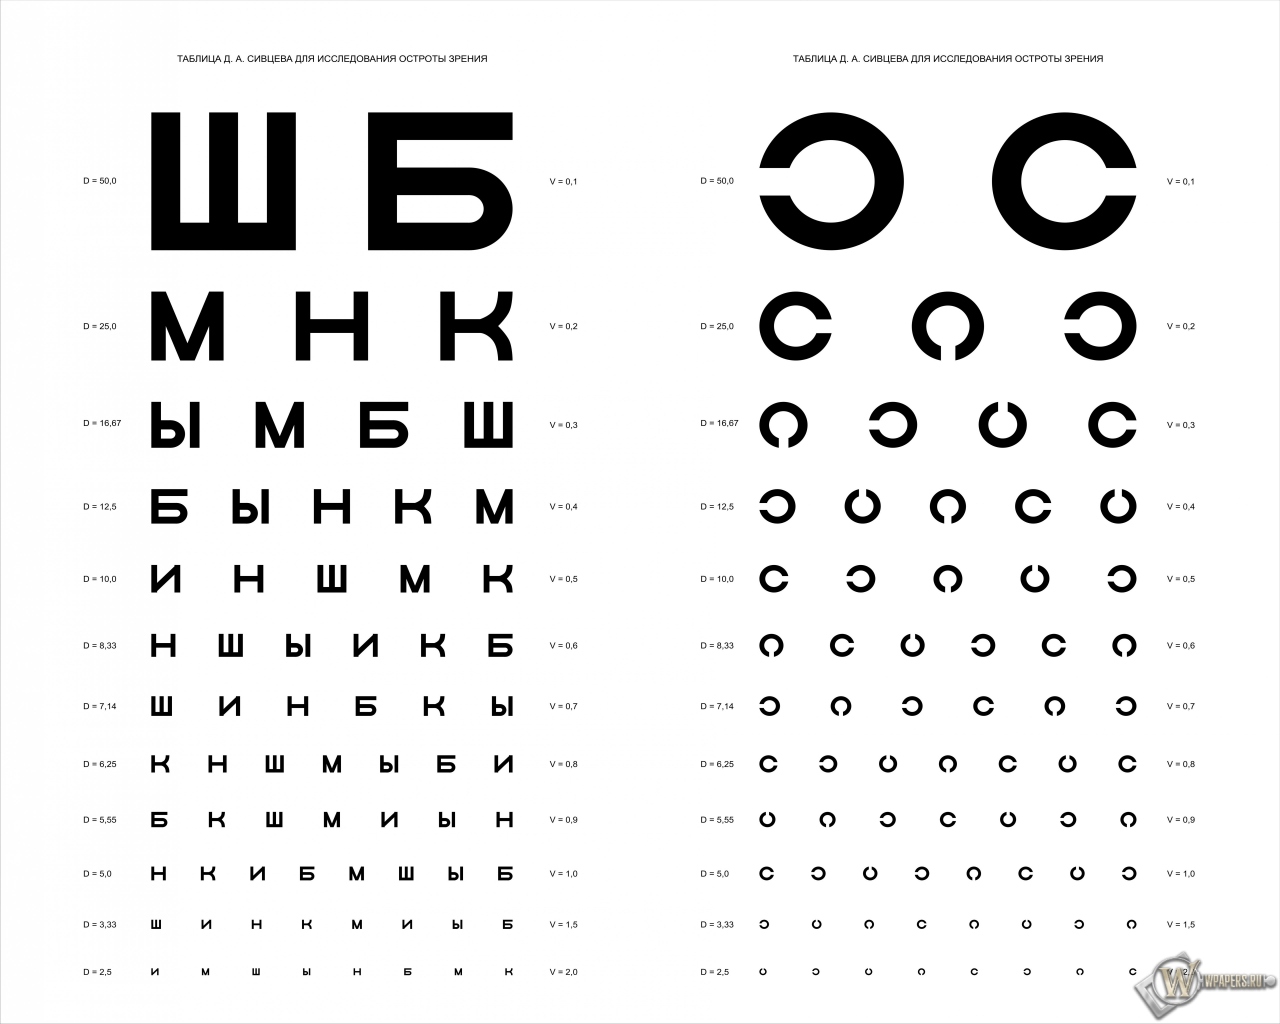 Таблица Д.А. Сивцева для проверки зрения 1280x1024